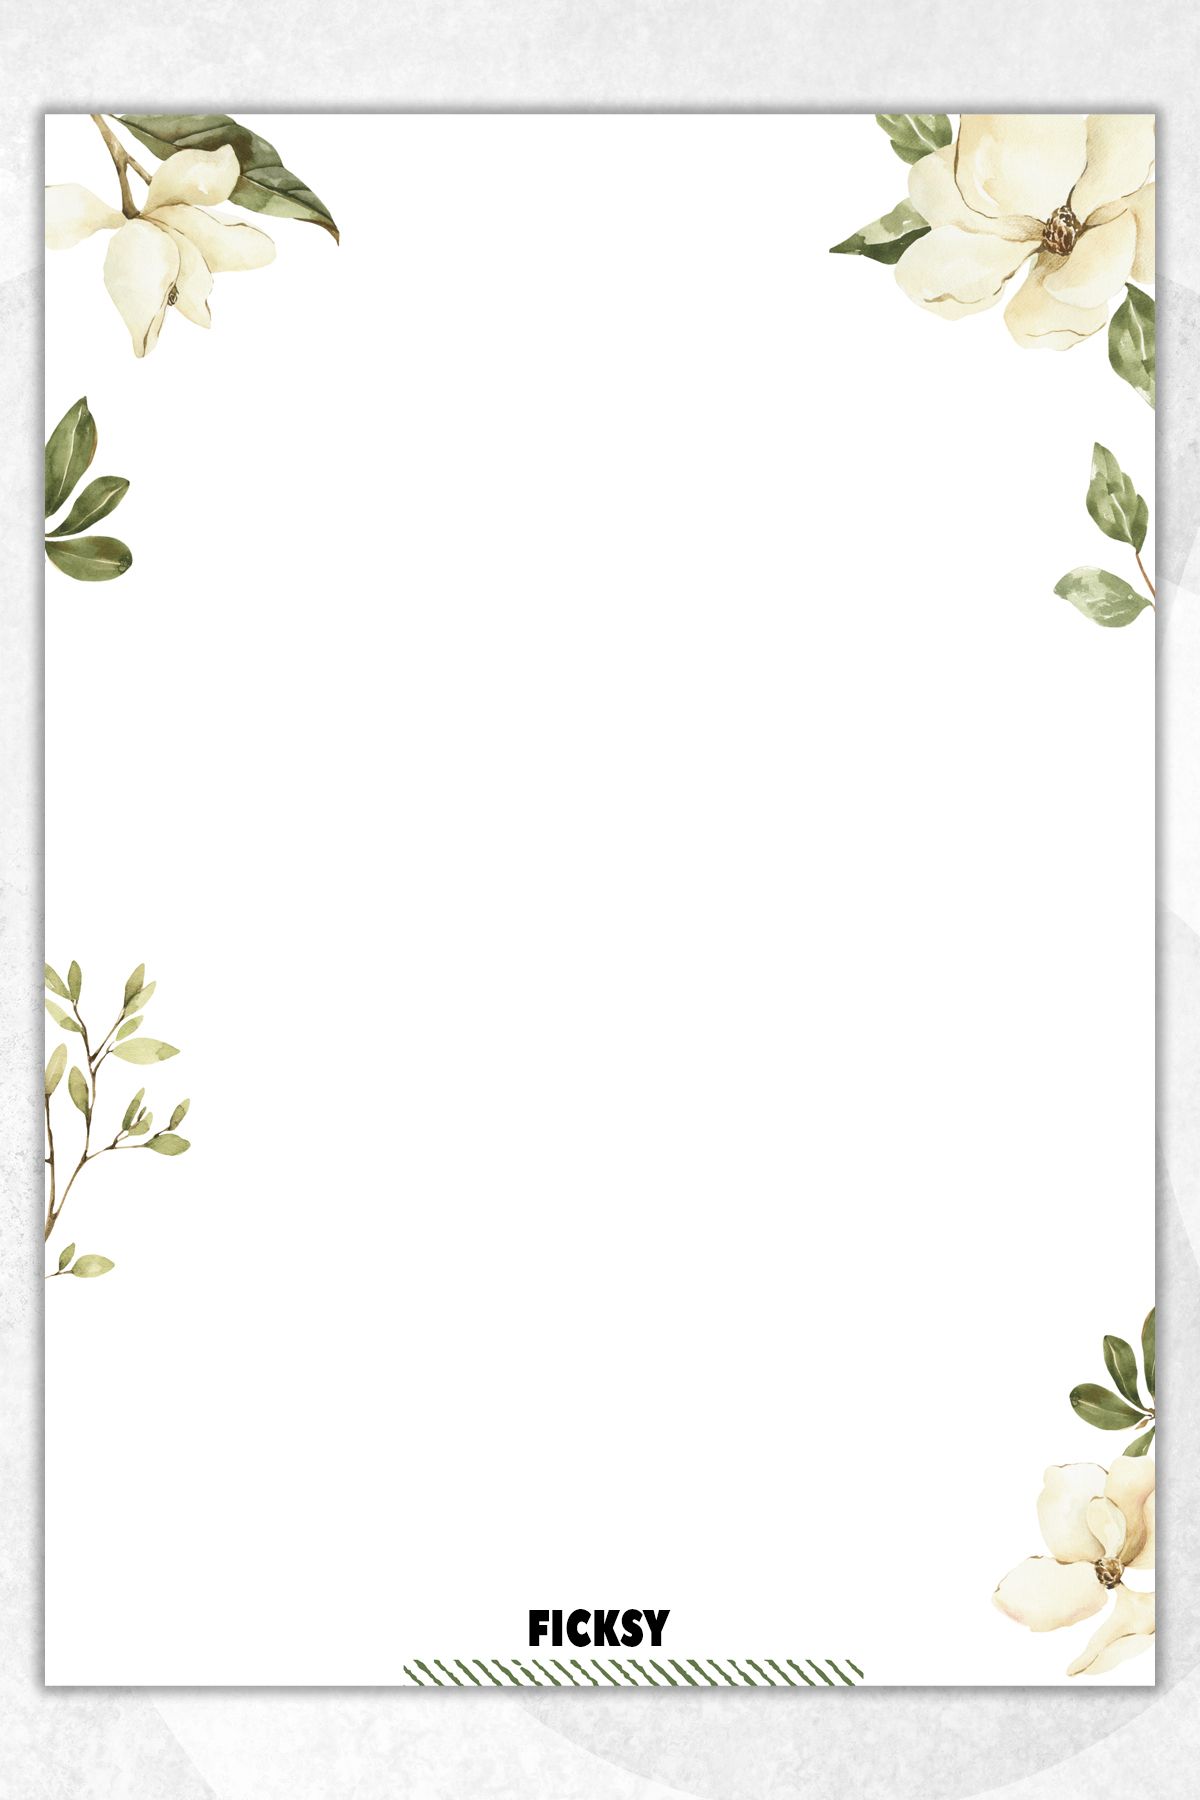 Ficksy Çiçek Not Kağıdı - A5 Ebat - 50 Yaprak - Notepad - Memopad - Bloknot - To Do List